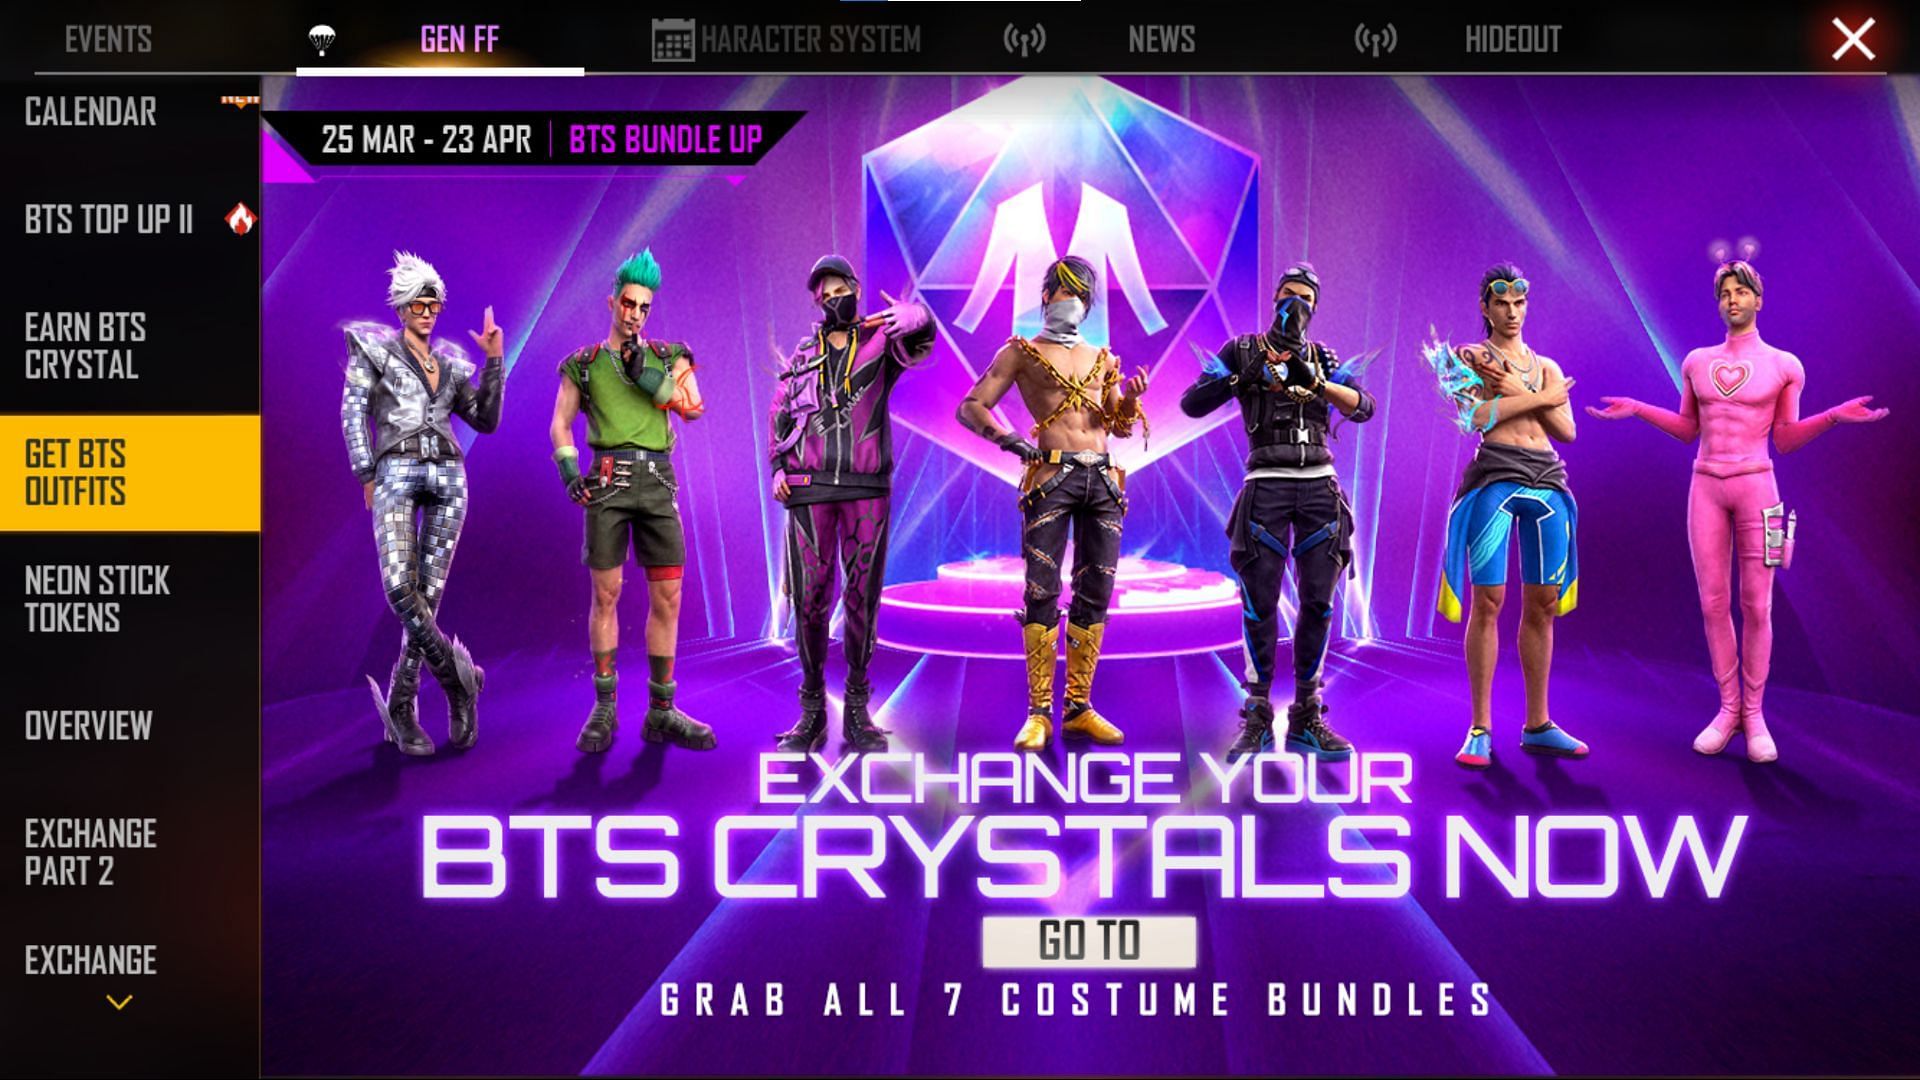 आप BTS Crystal से खास बंडल्स हासिल कर सकते हैं (Image via Garena)